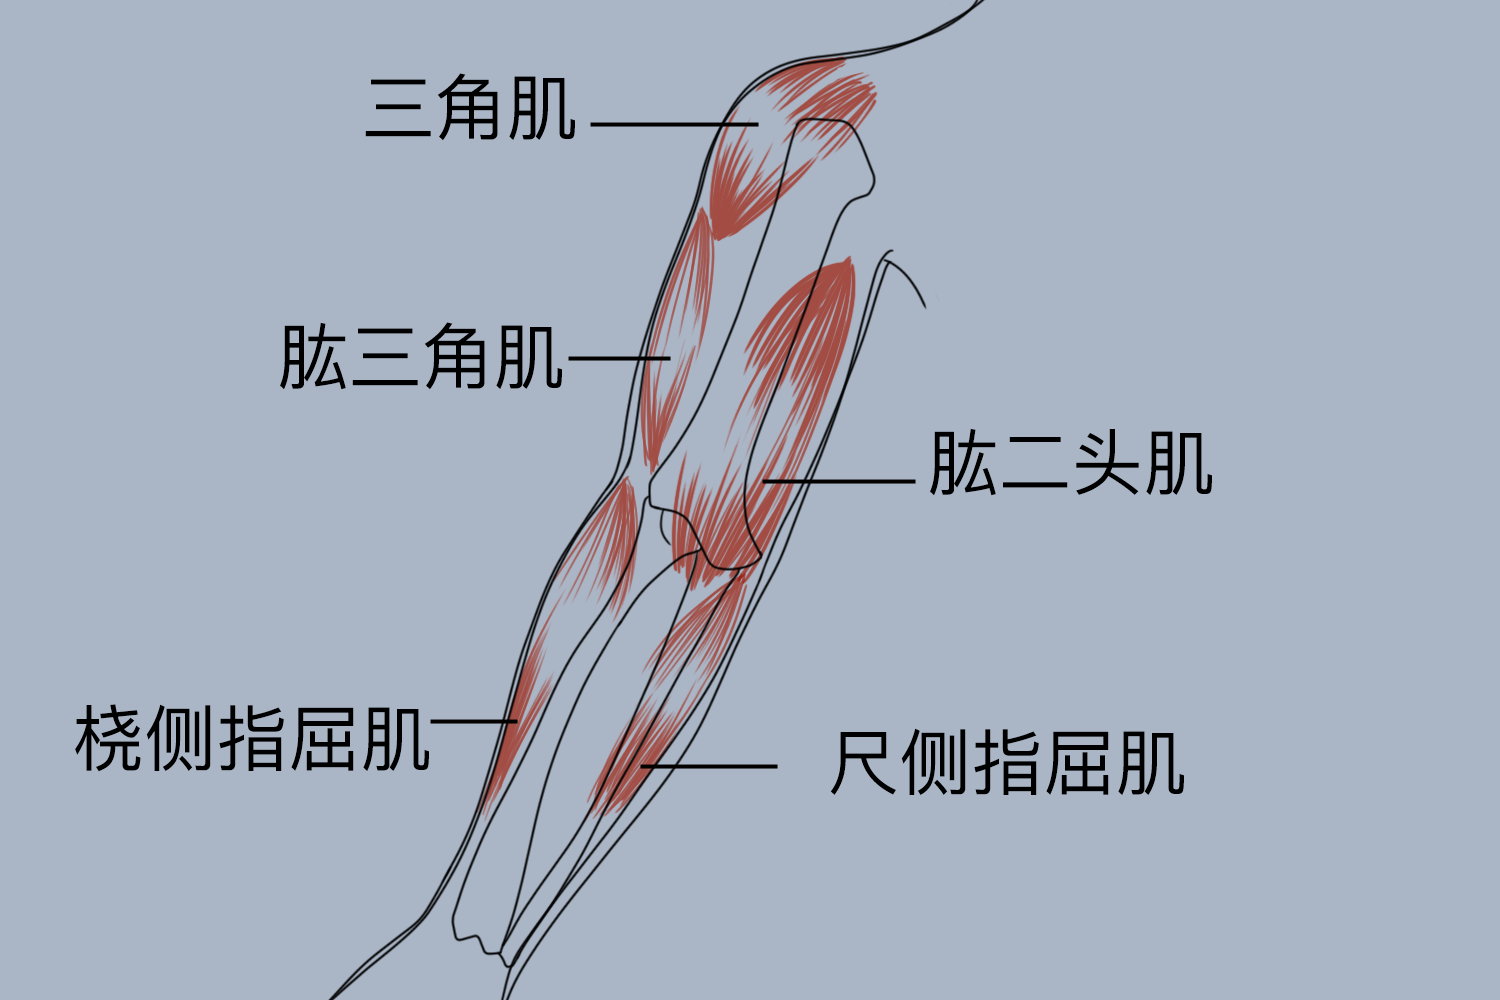 图胳膊肌肉示意图功能由于胳膊骨骼轻巧,关节囊薄而松弛,韧带相对薄弱